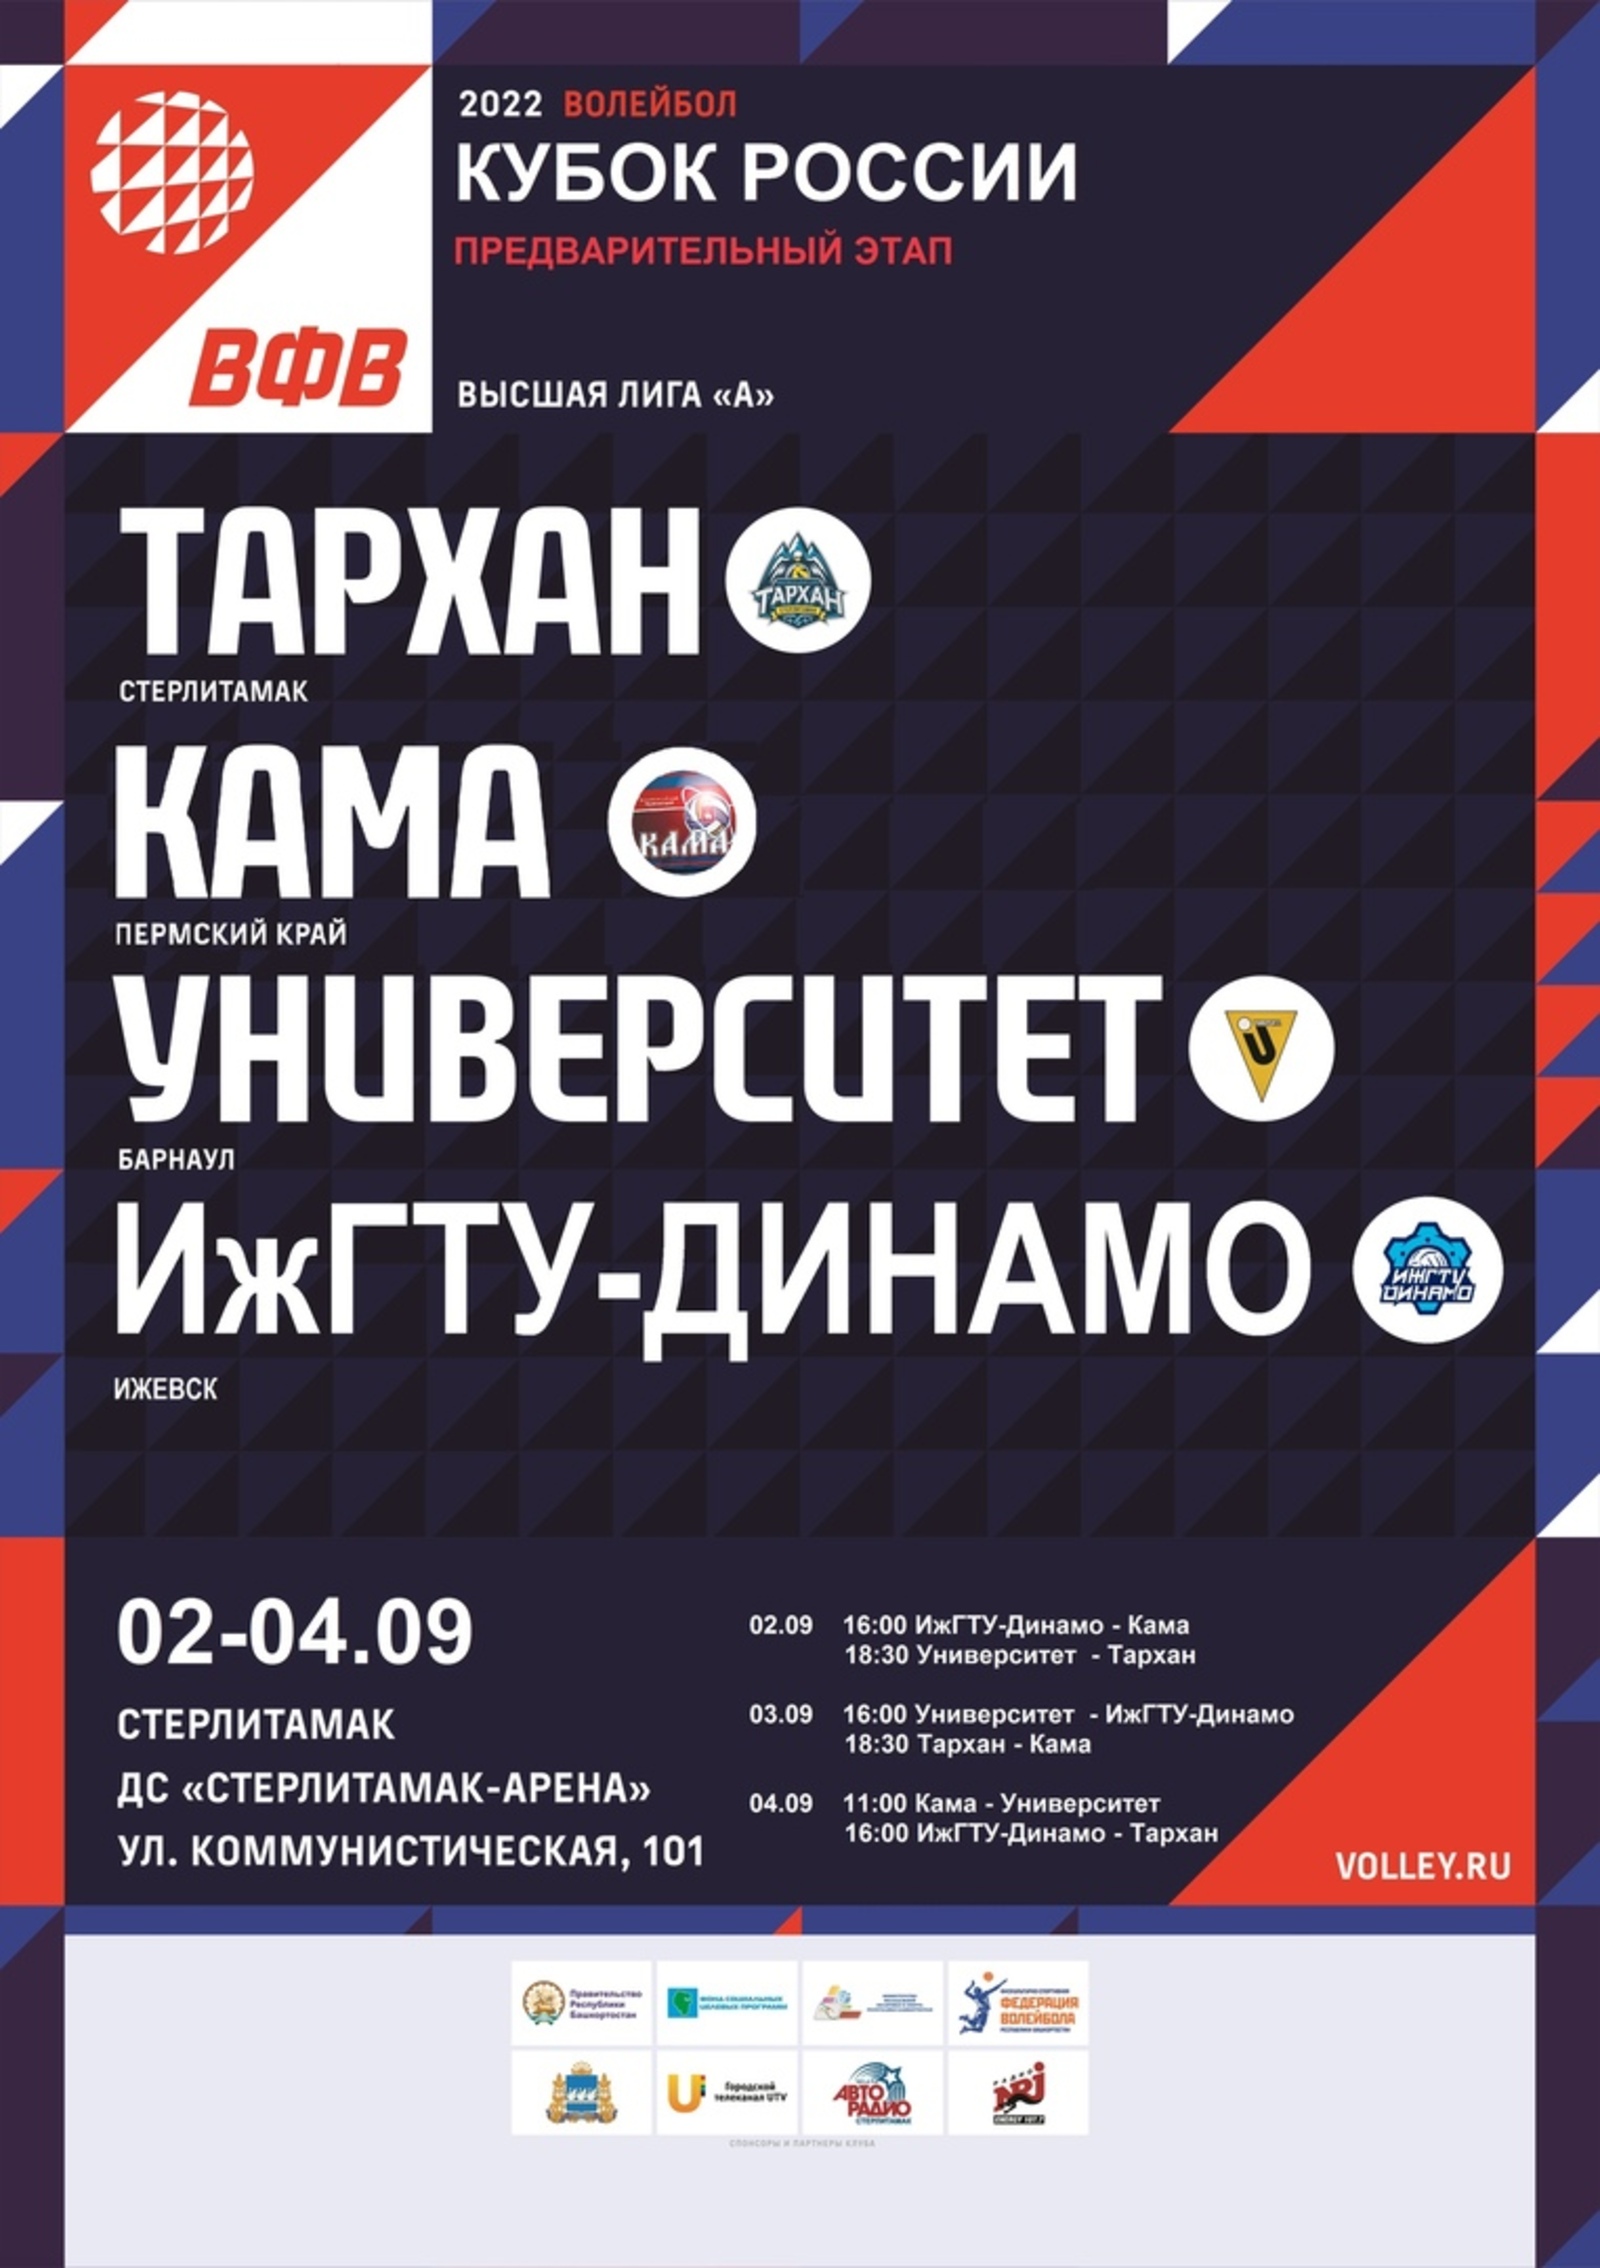 В Стерлитамаке пройдёт  предварительный этап Кубка России по волейболу